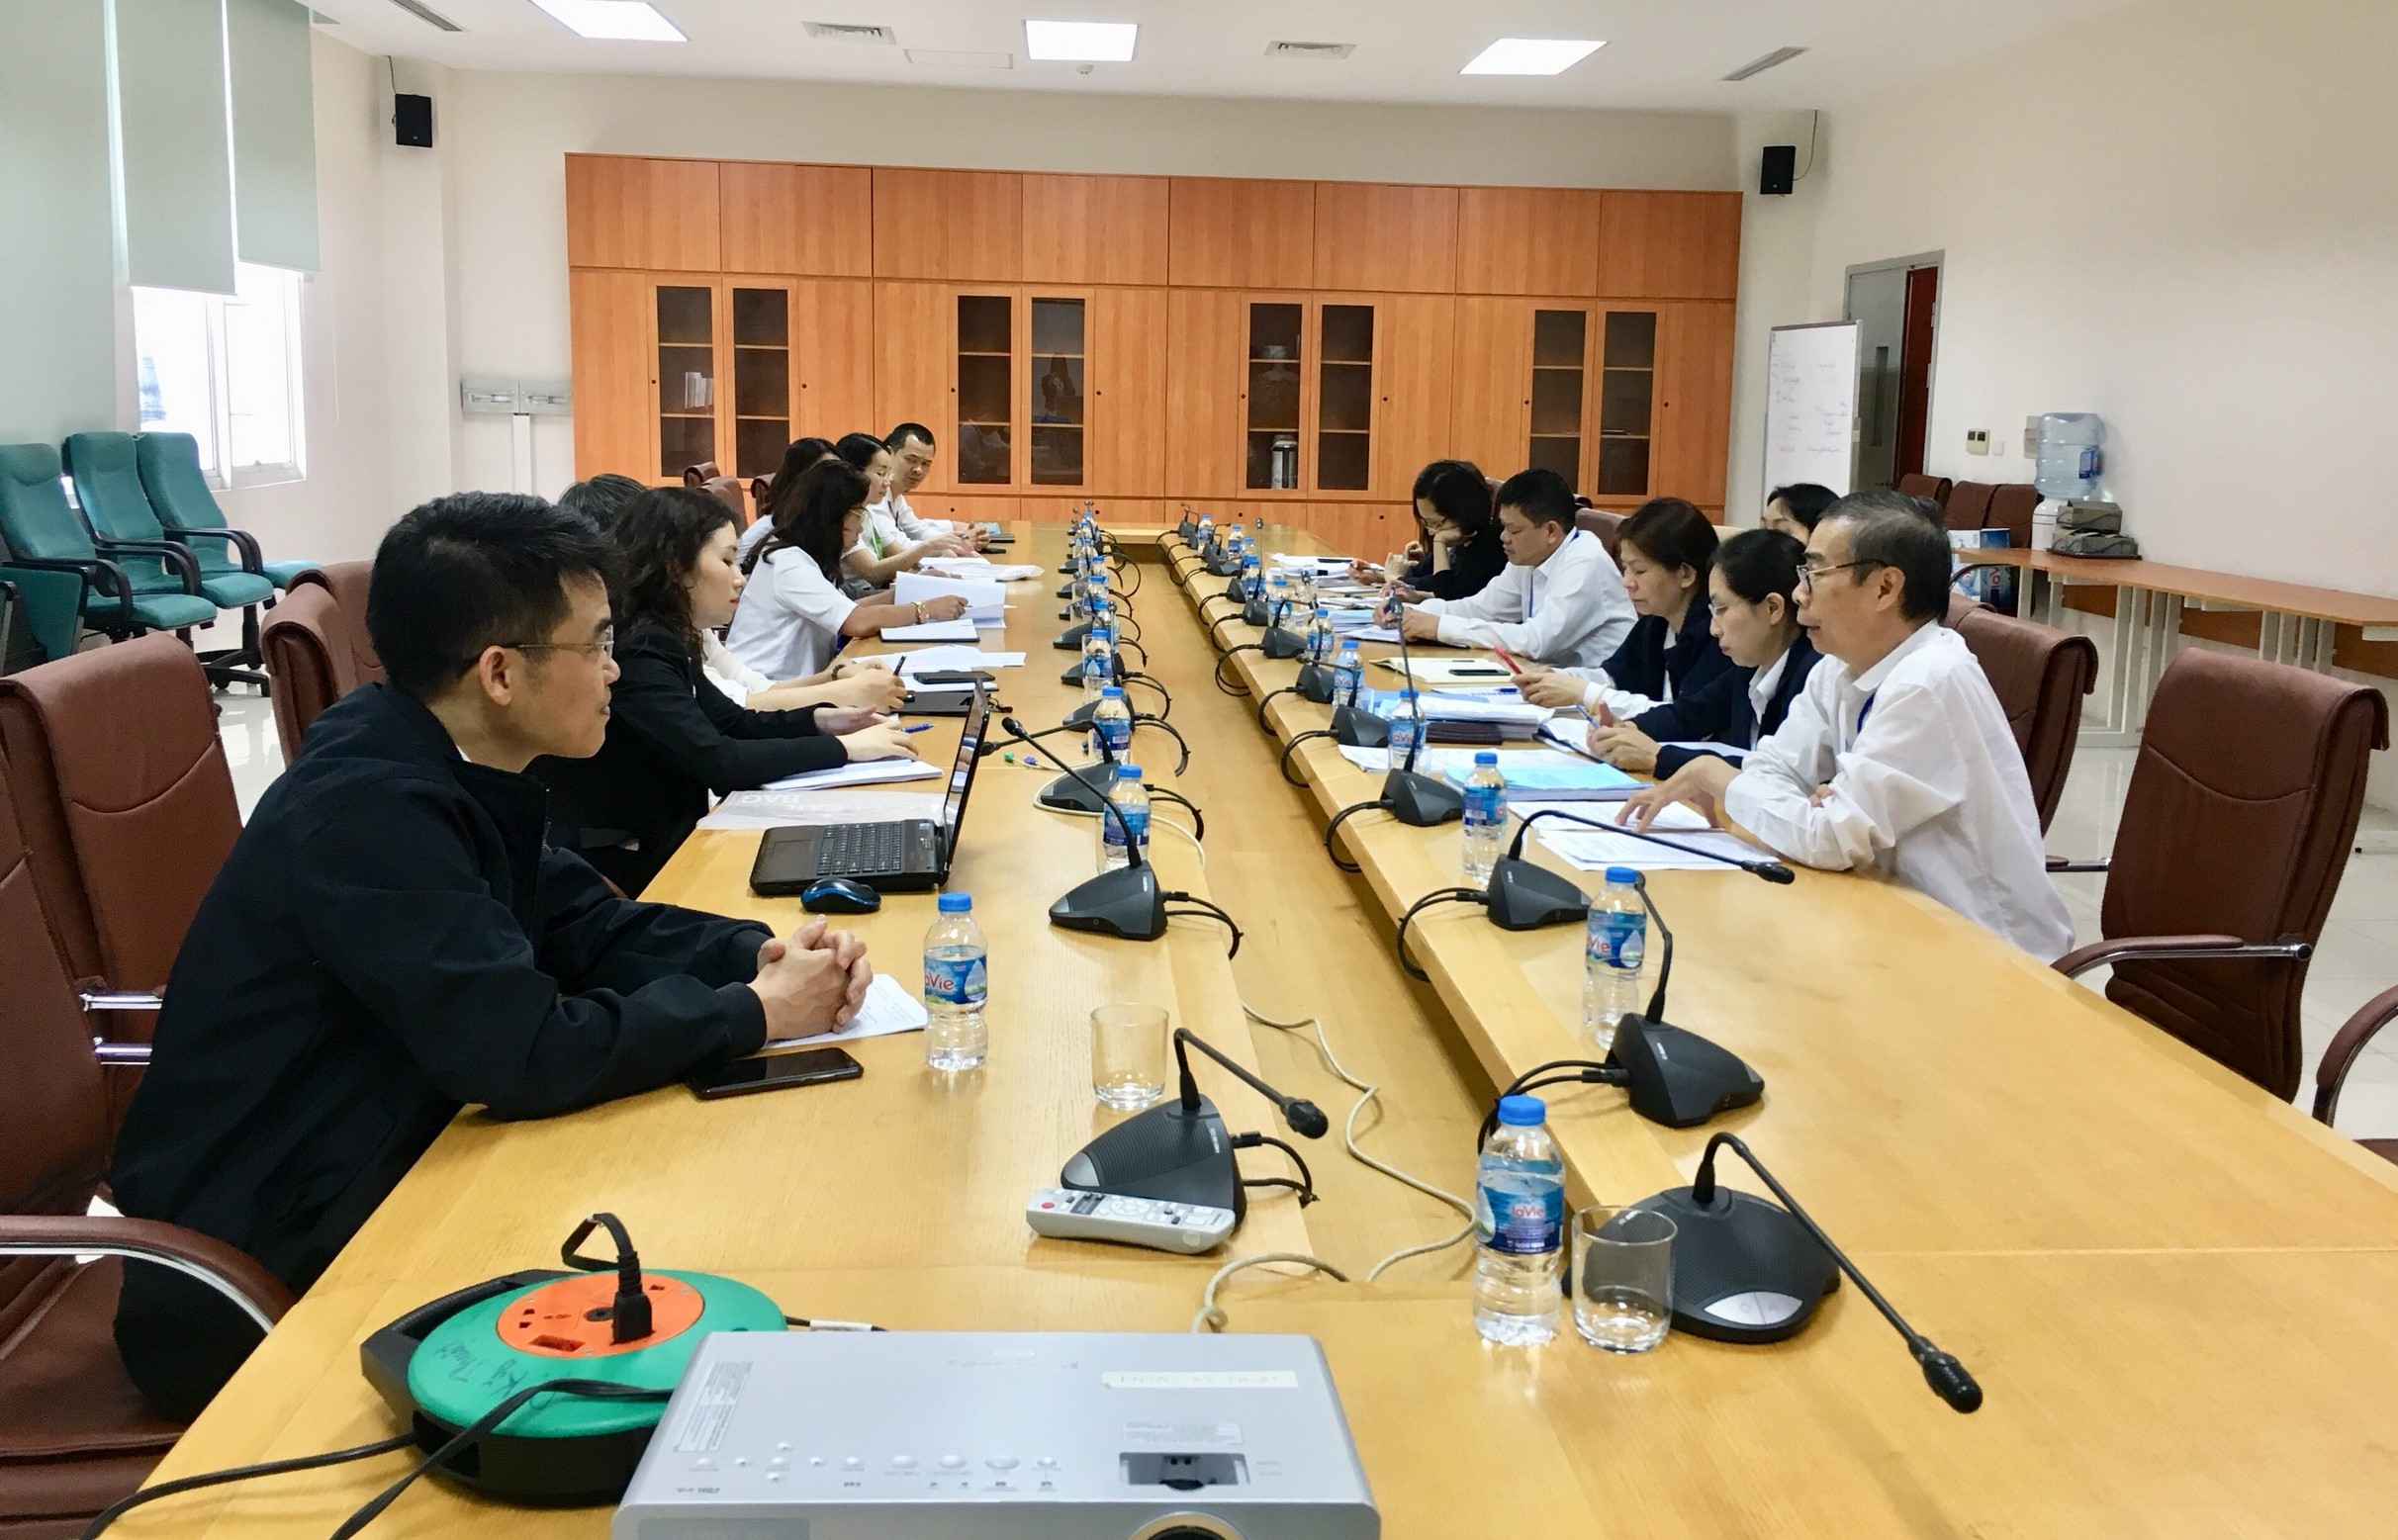 Đoàn cán bộ Cục Hàng không Việt Nam đến kiểm tra thực tế cơ sở đào tạo huấn luyện của các đơn vị trực thuộc Tổng công ty Quản lý bay Việt Nam